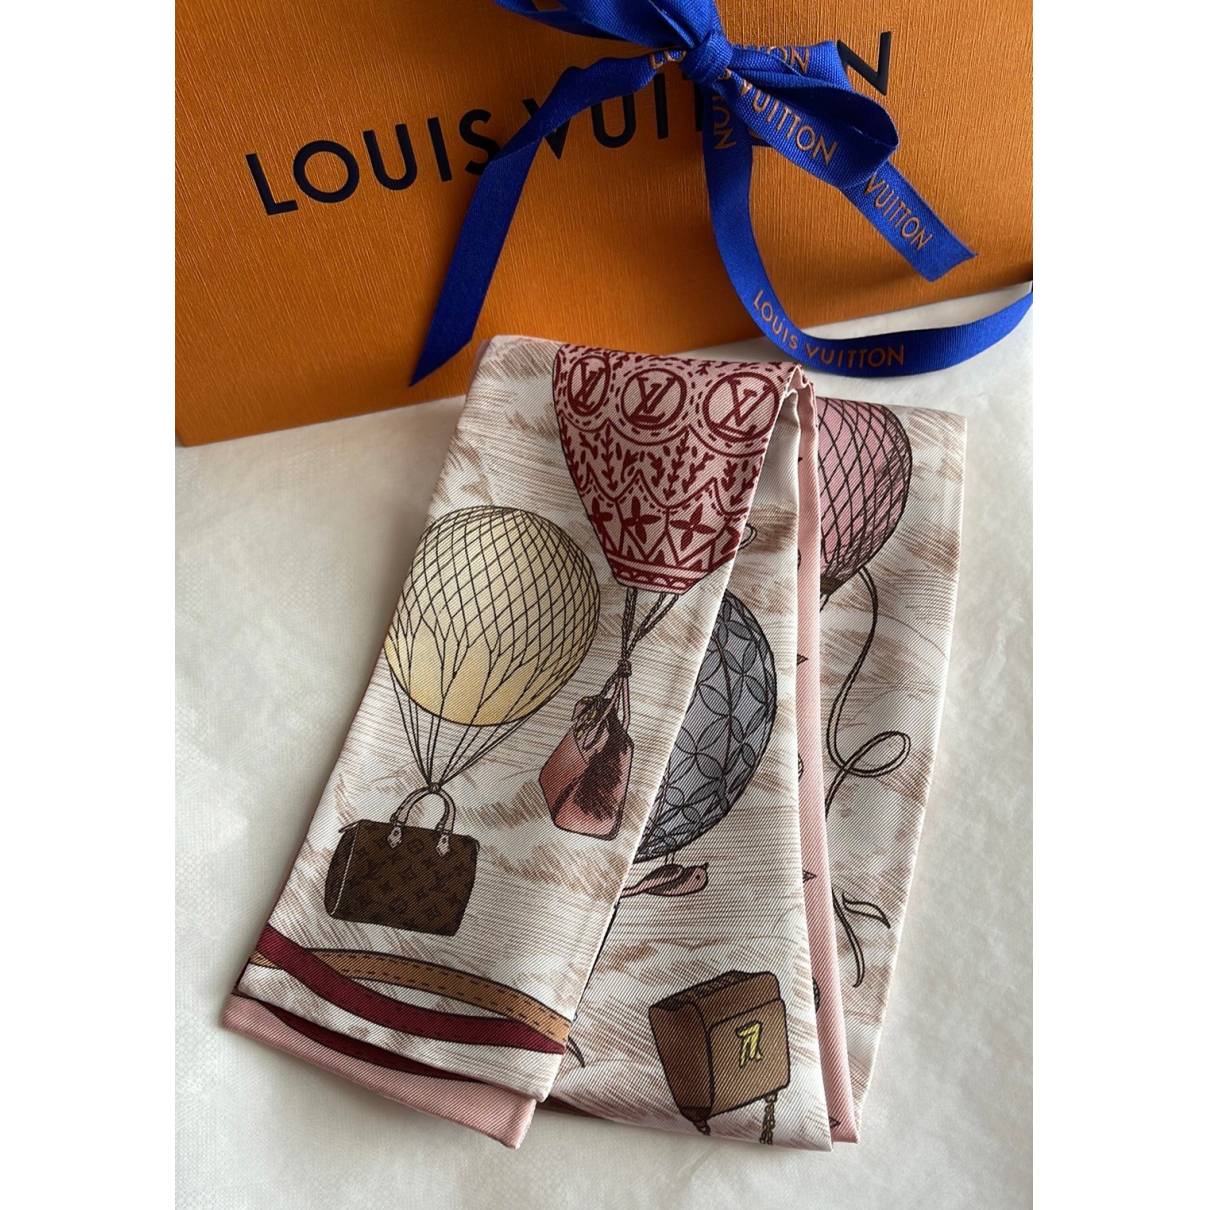 Louis Vuitton Silks Flag Bag Charm MP2485 – Luxuria & Co.